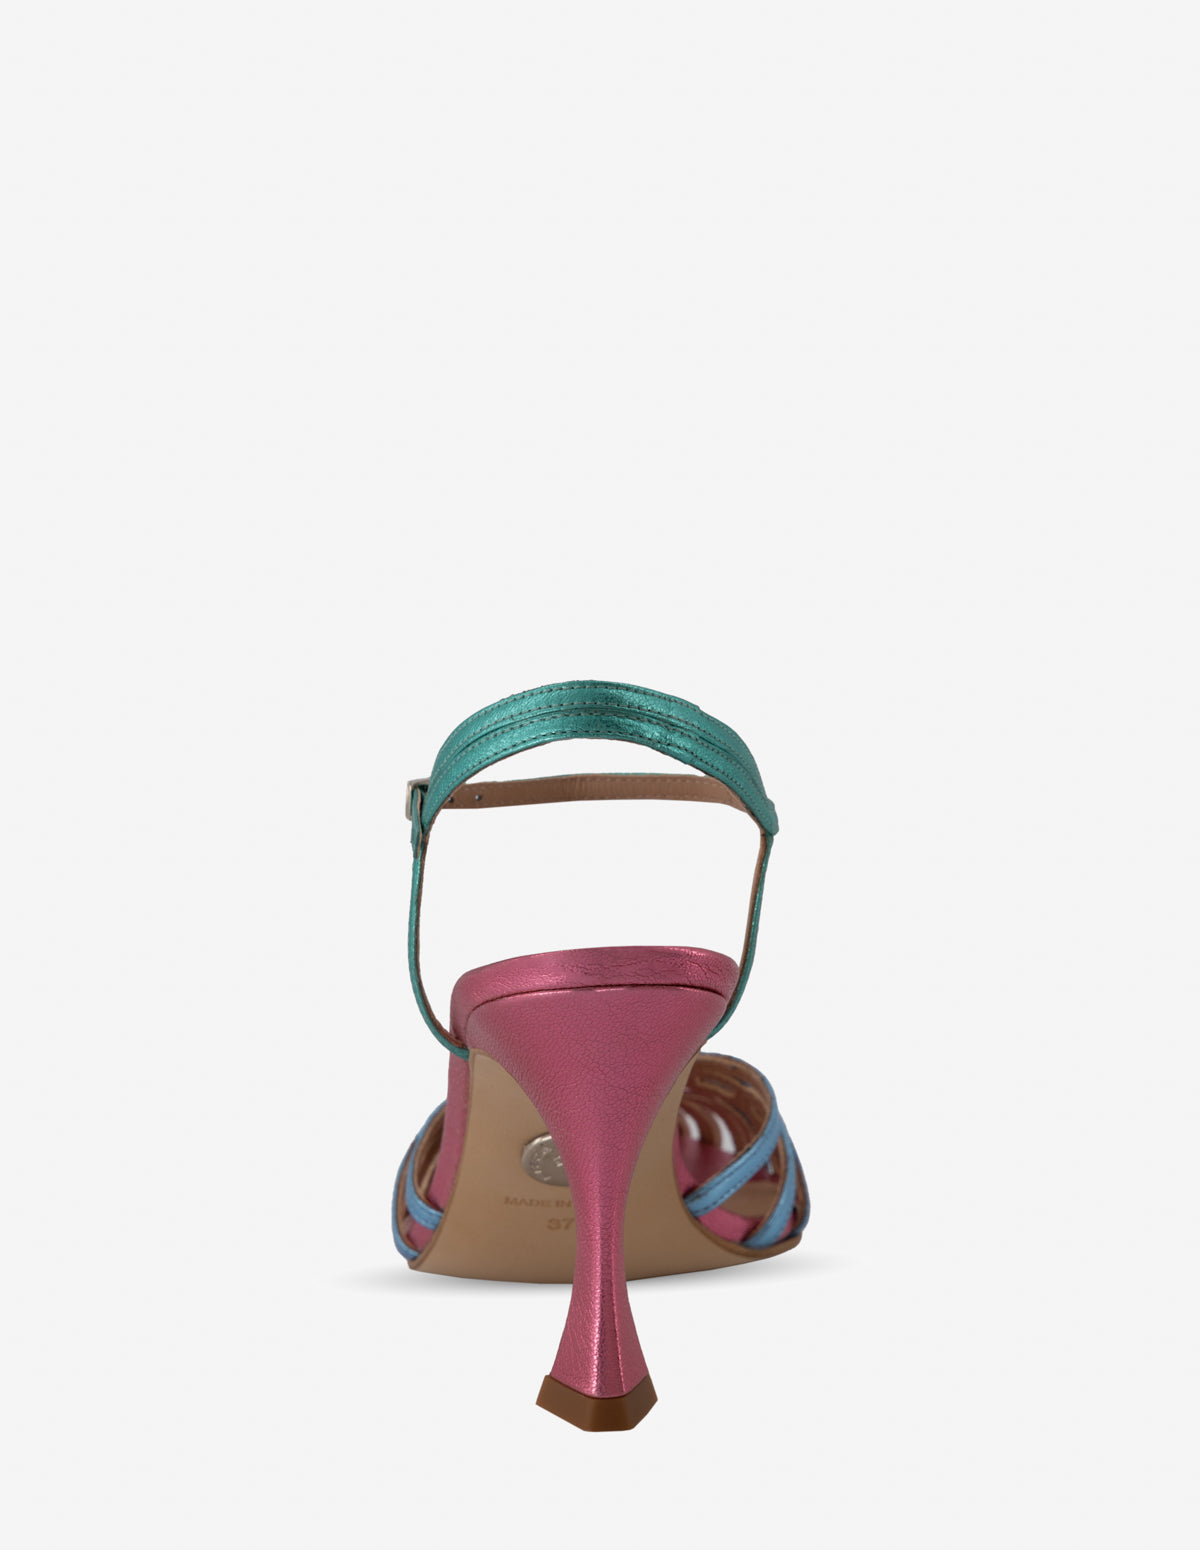 Sandalia de tacón alto en piel metalizada multicolor para mujer